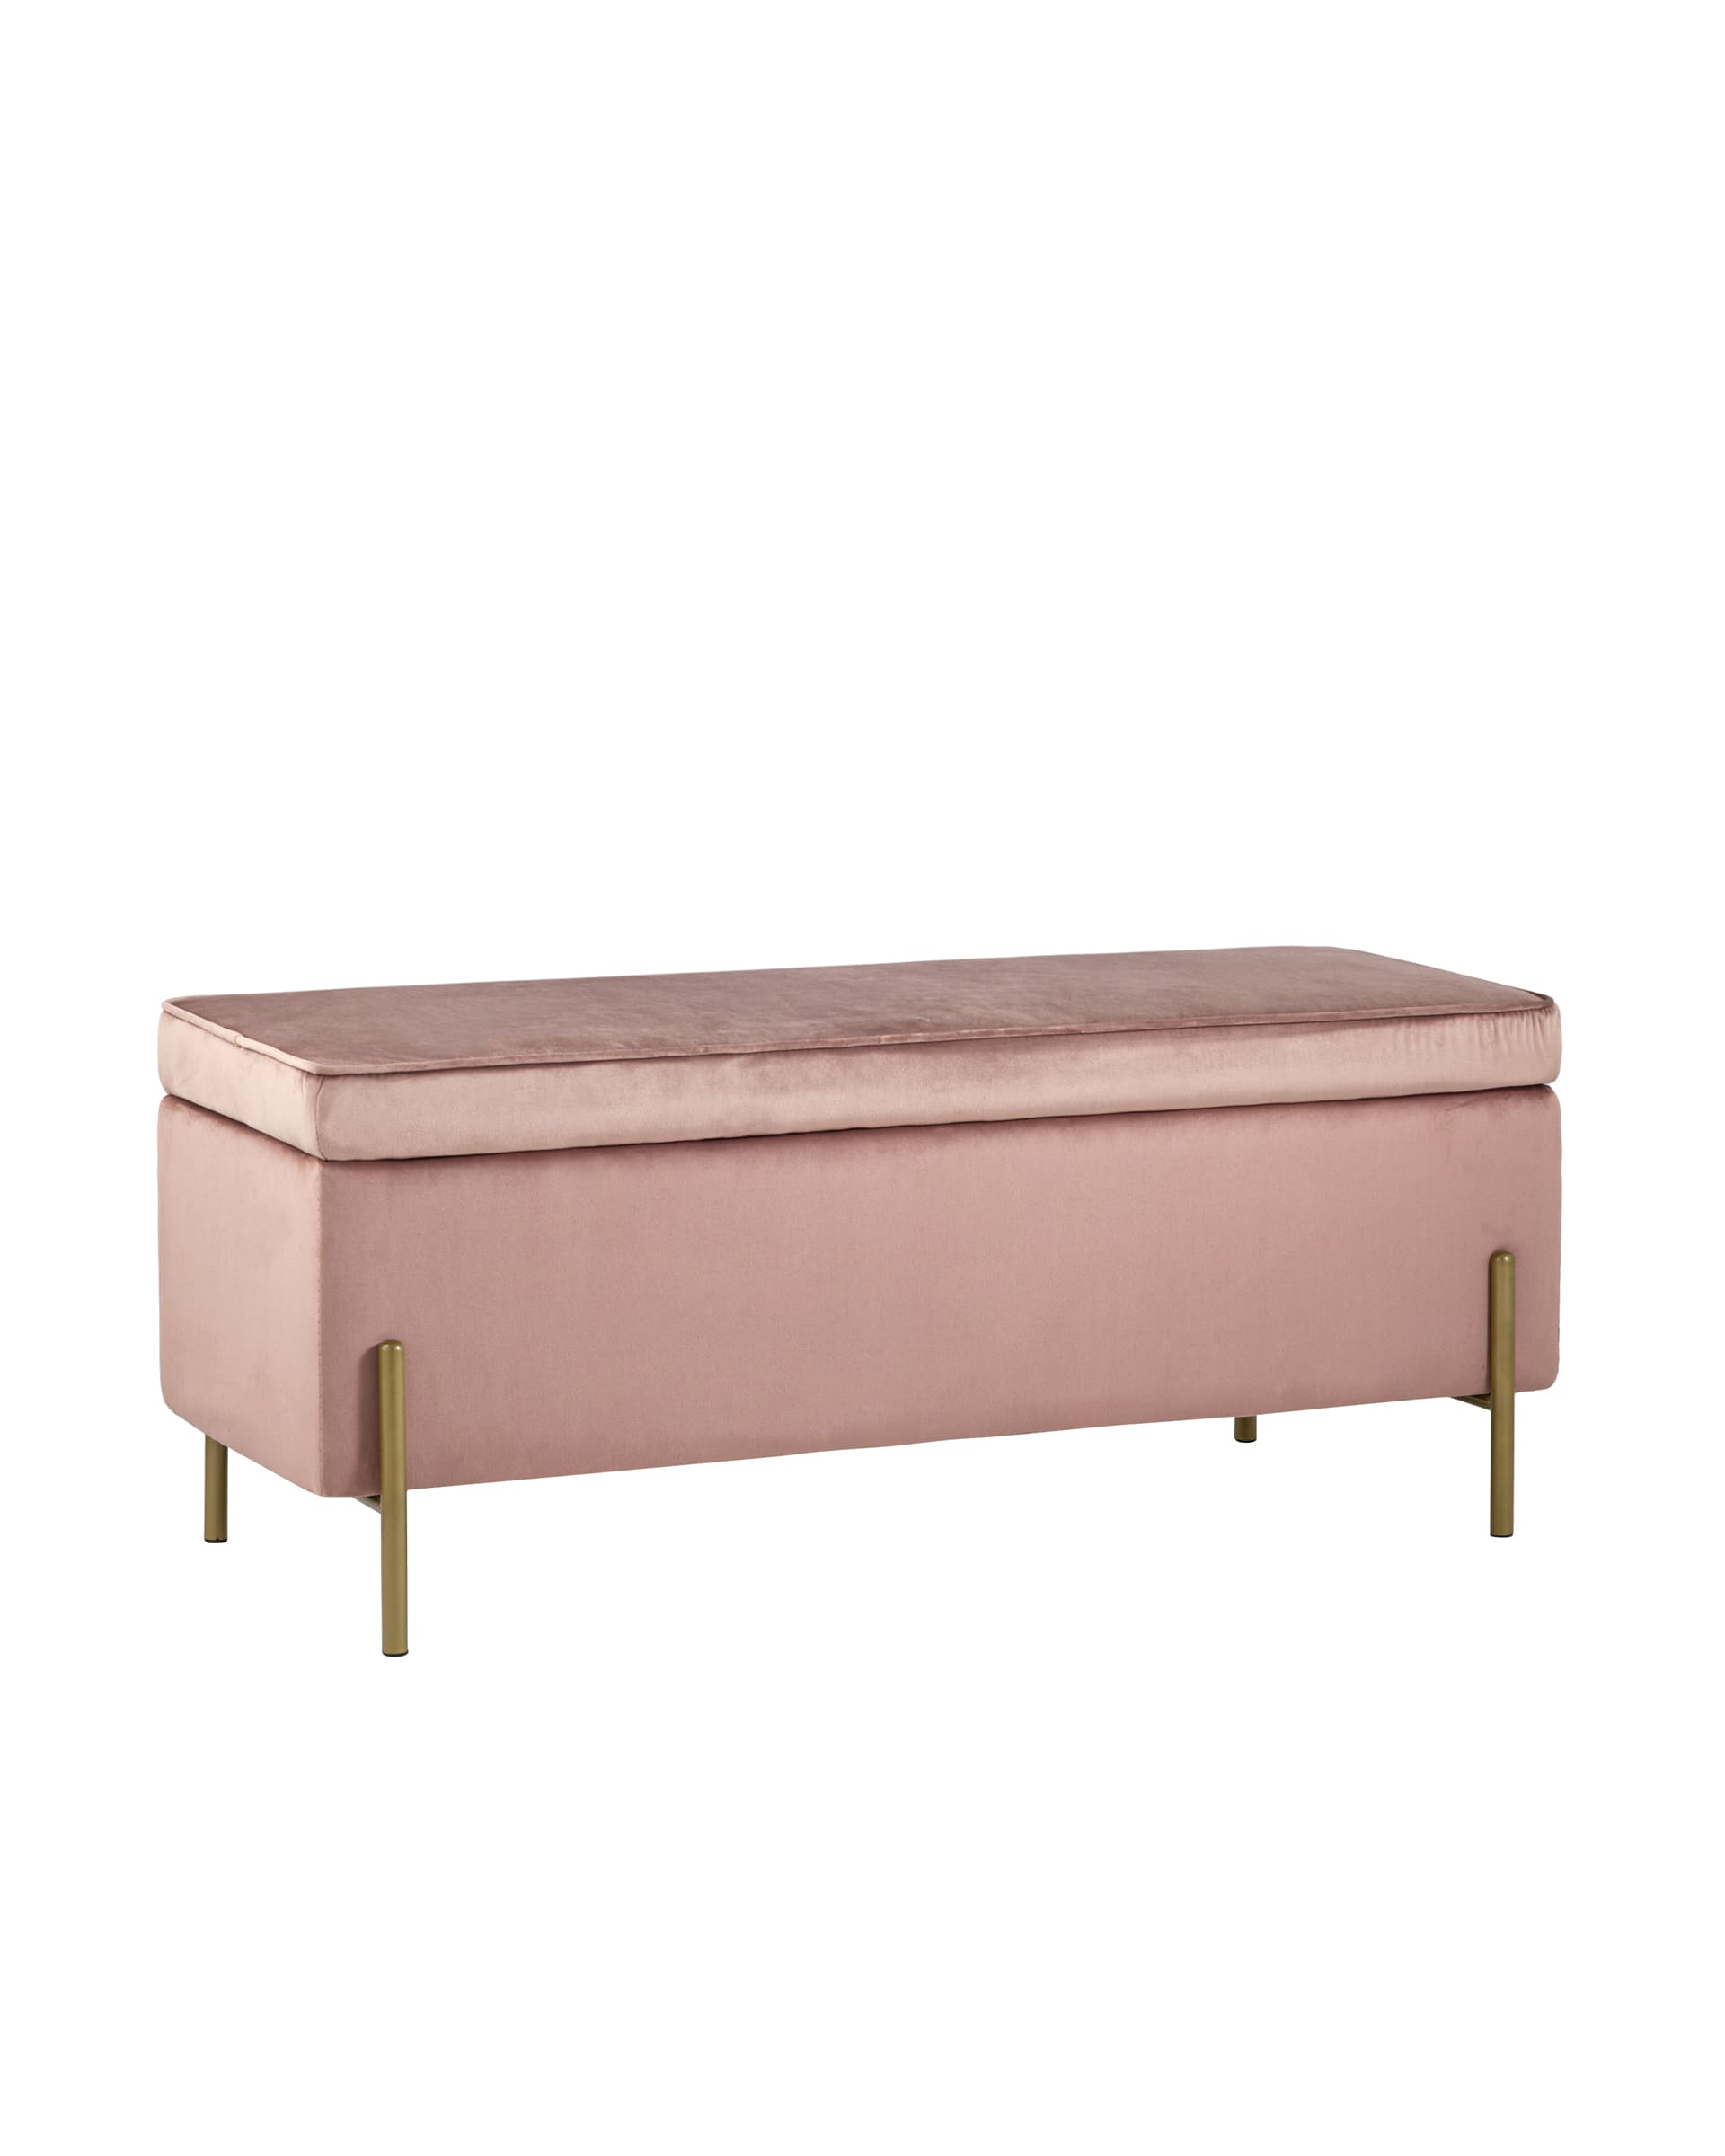 Банкетка Тюдор с ящиком для хранения обивка велюр розовый ножки из металла цвет золото